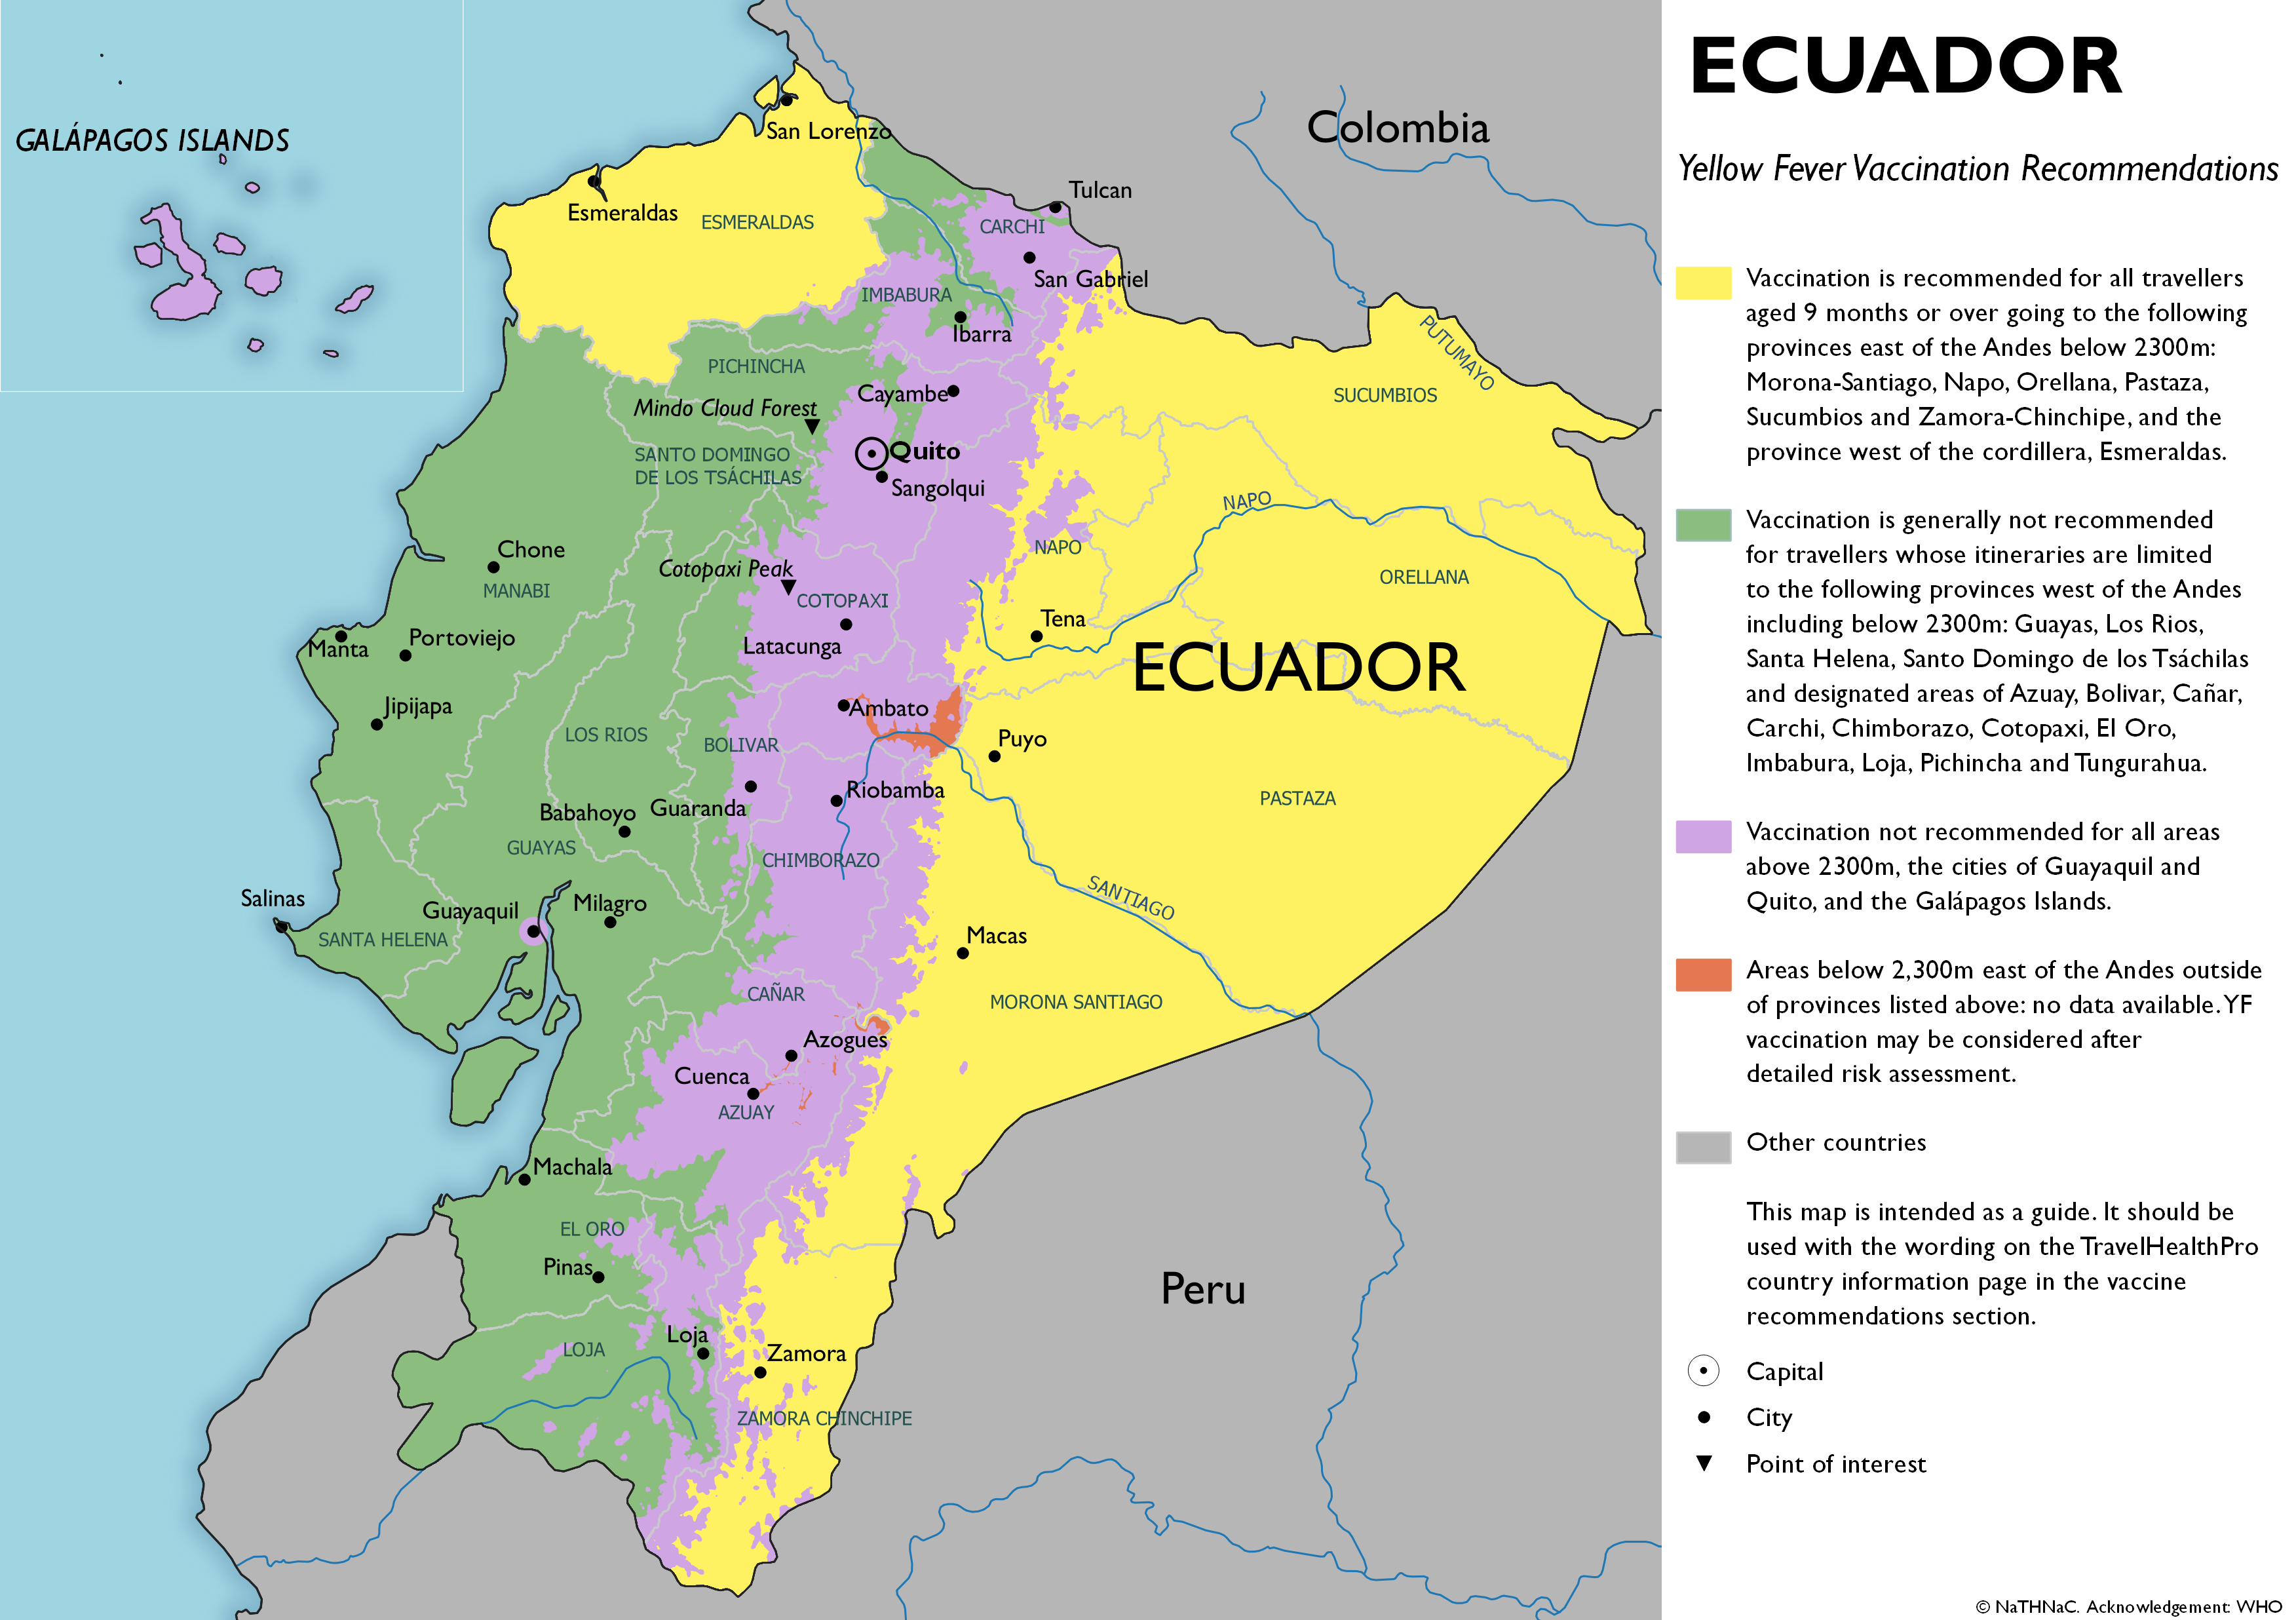 Por qué país europeo pasa la línea del ecuador